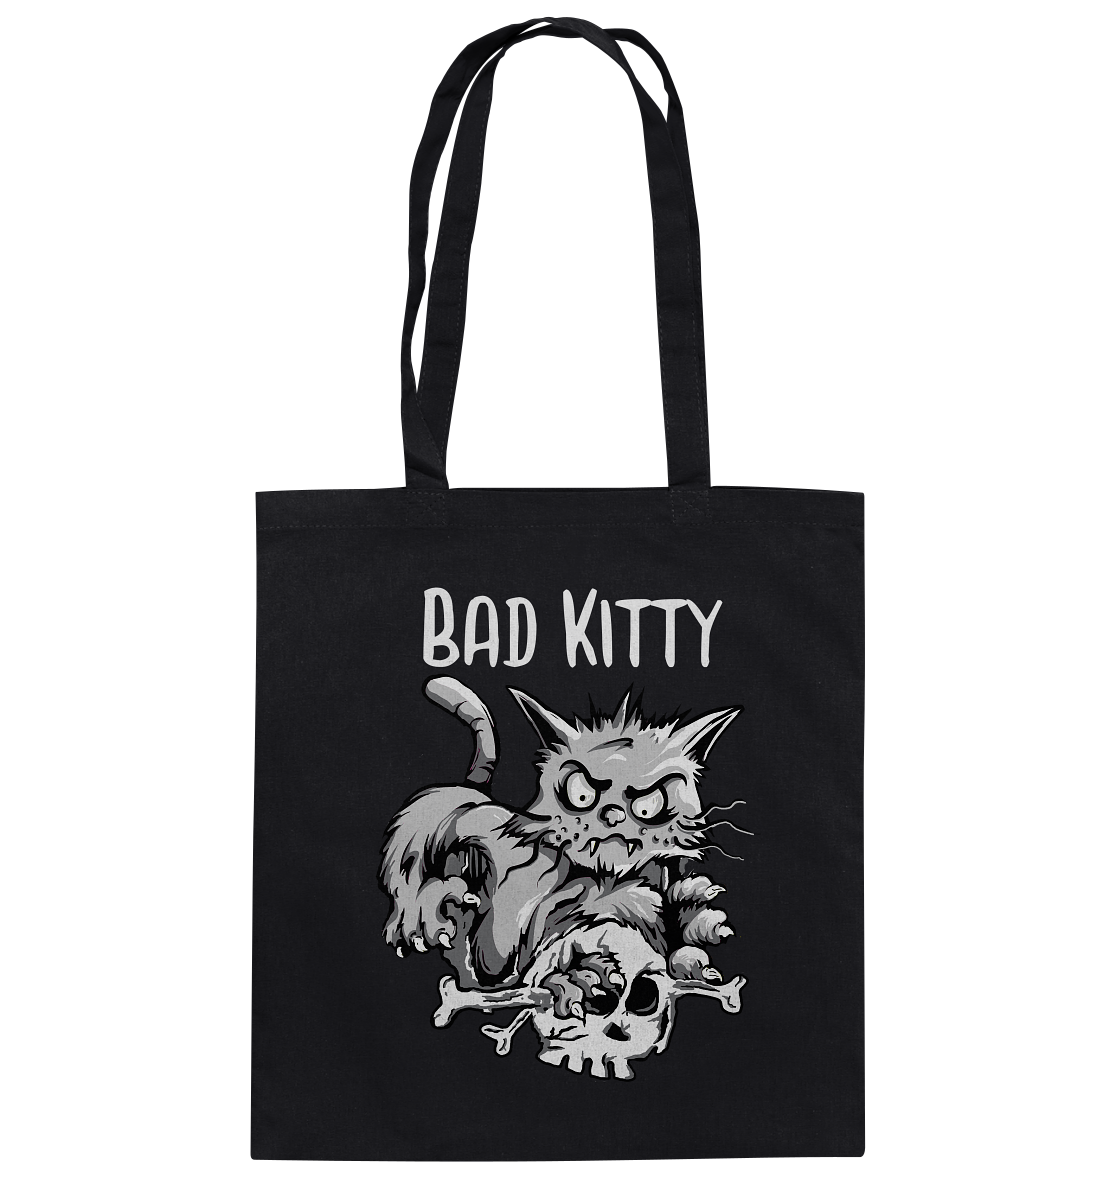 Bad Kitty mit Skull. Böse Gothic Katze - Baumwolltasche